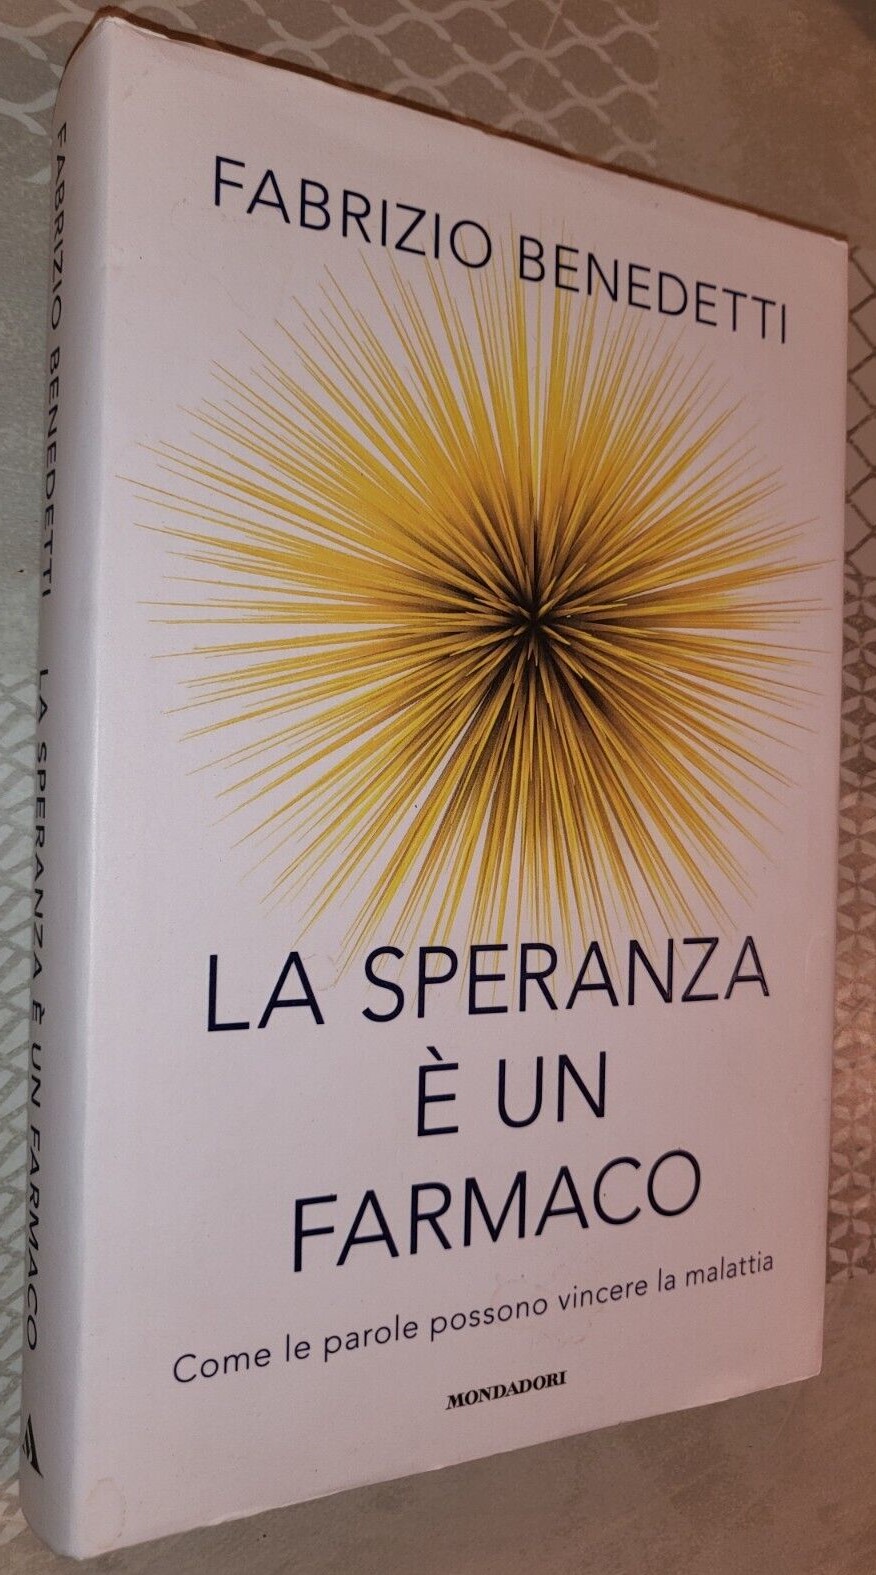 “La speranza è un farmaco” di Fabrizio Benedetti (Mondadori 2018): raro e ricercato